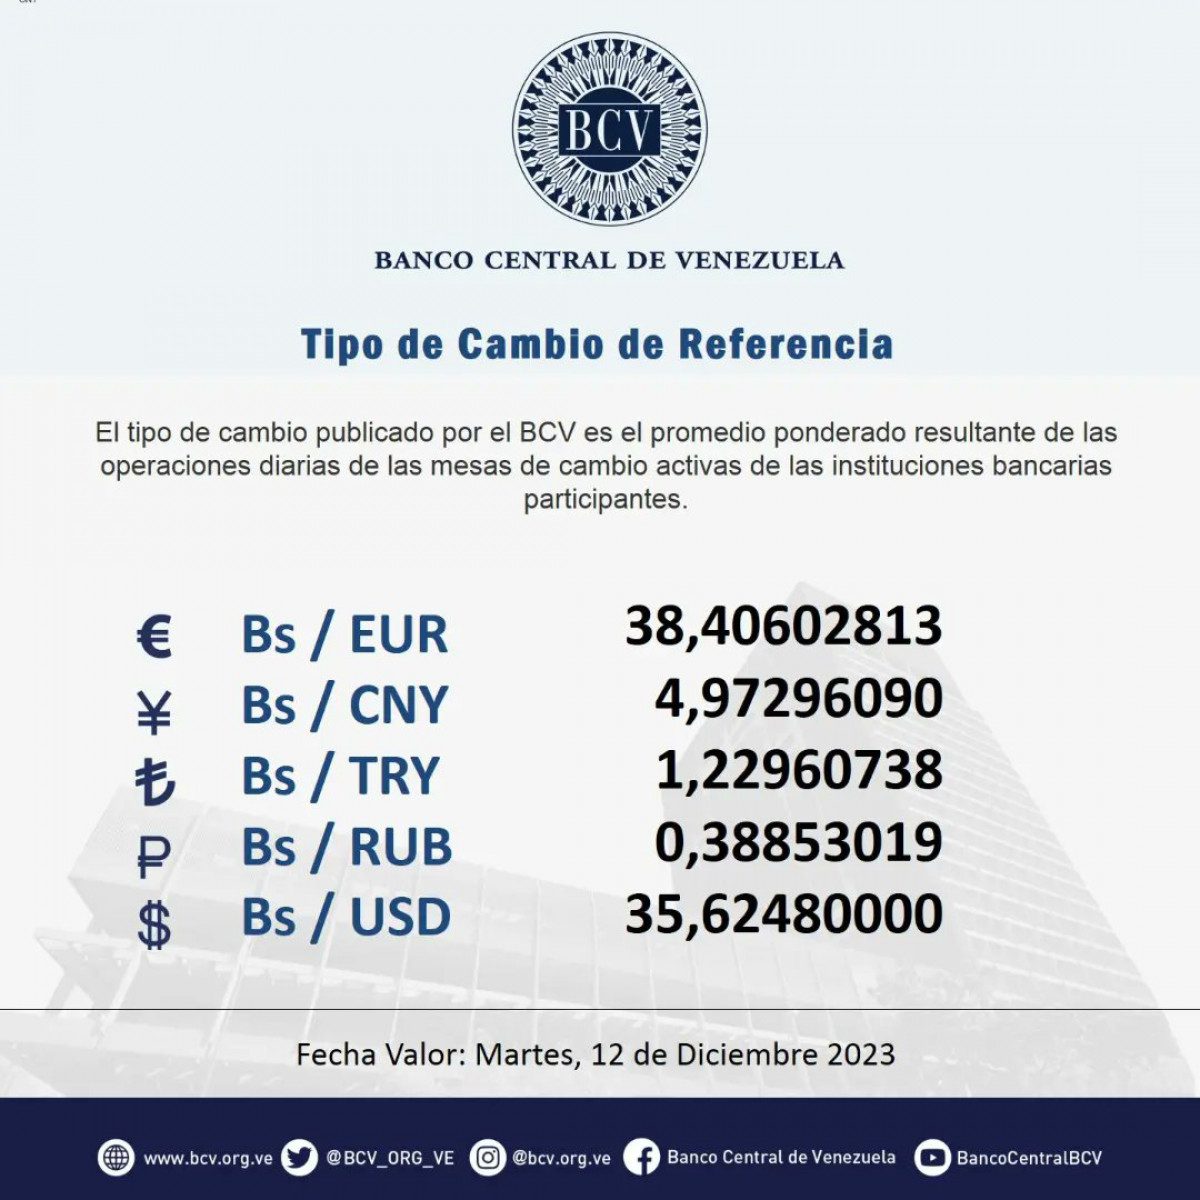 dolartoday en venezuela precio del dolar este lunes 11 de diciembre de 2023 laverdaddemonagas.com bcv6543